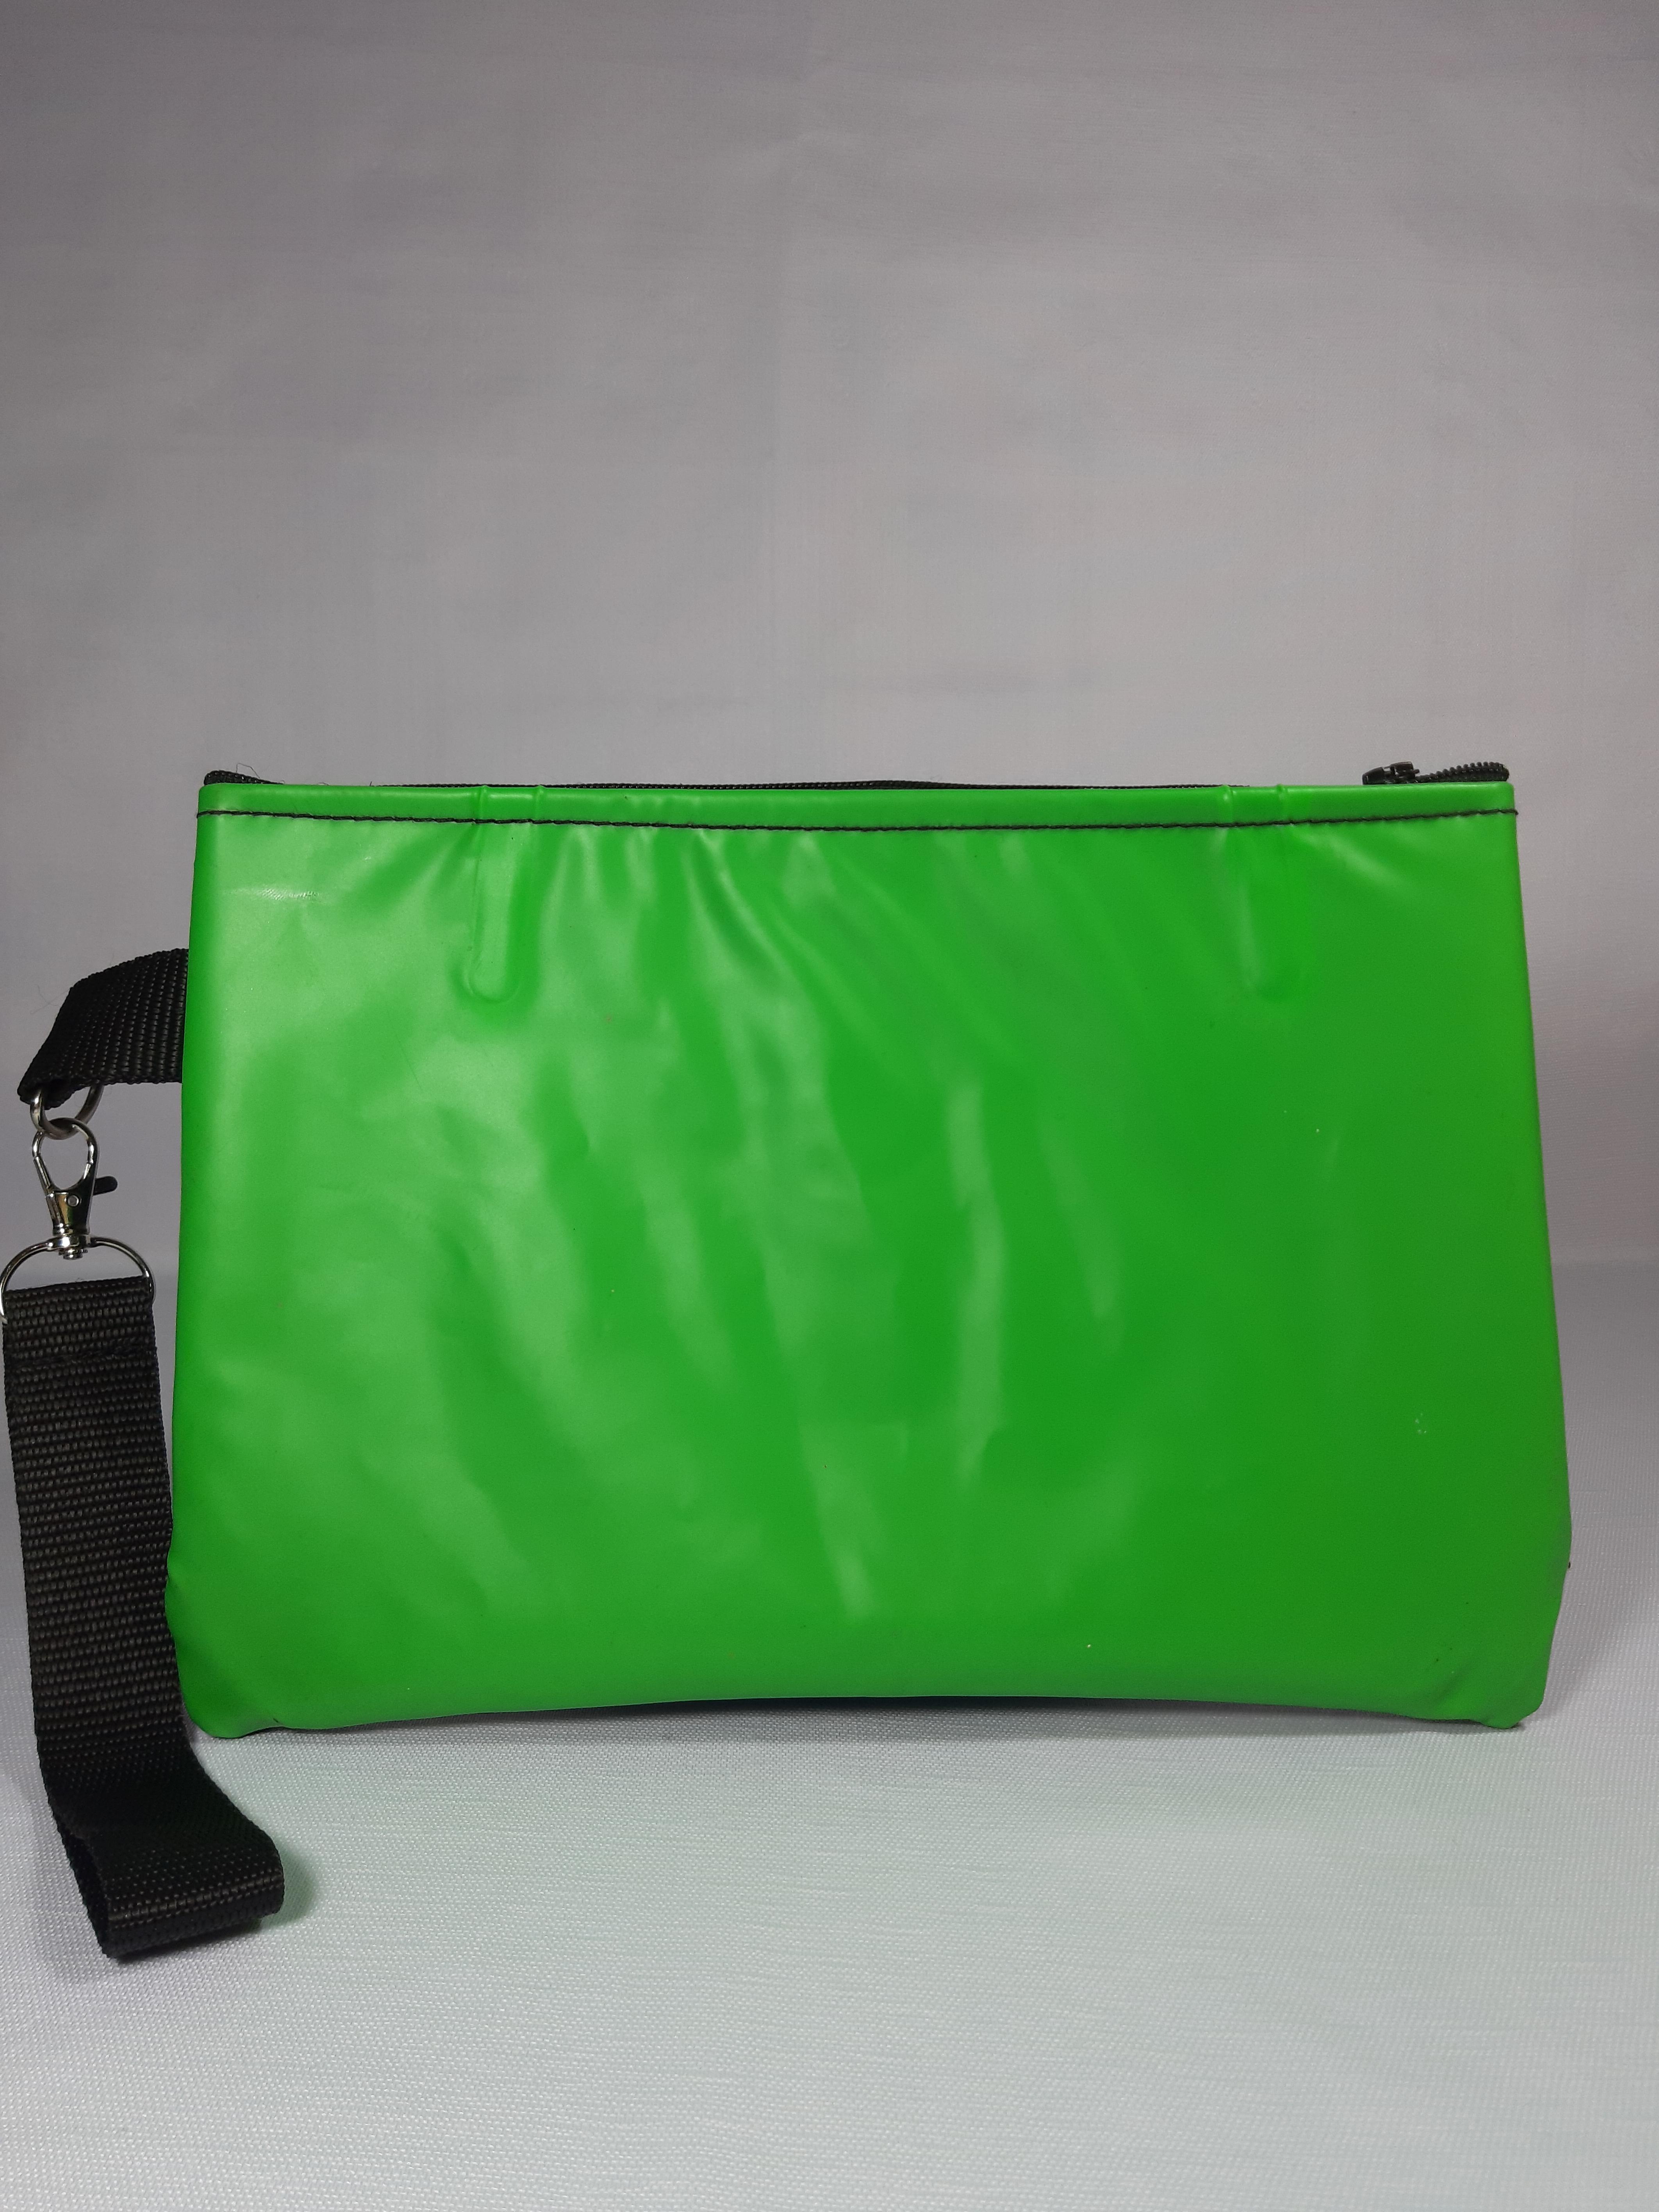 Green Lilo Clutch Bag